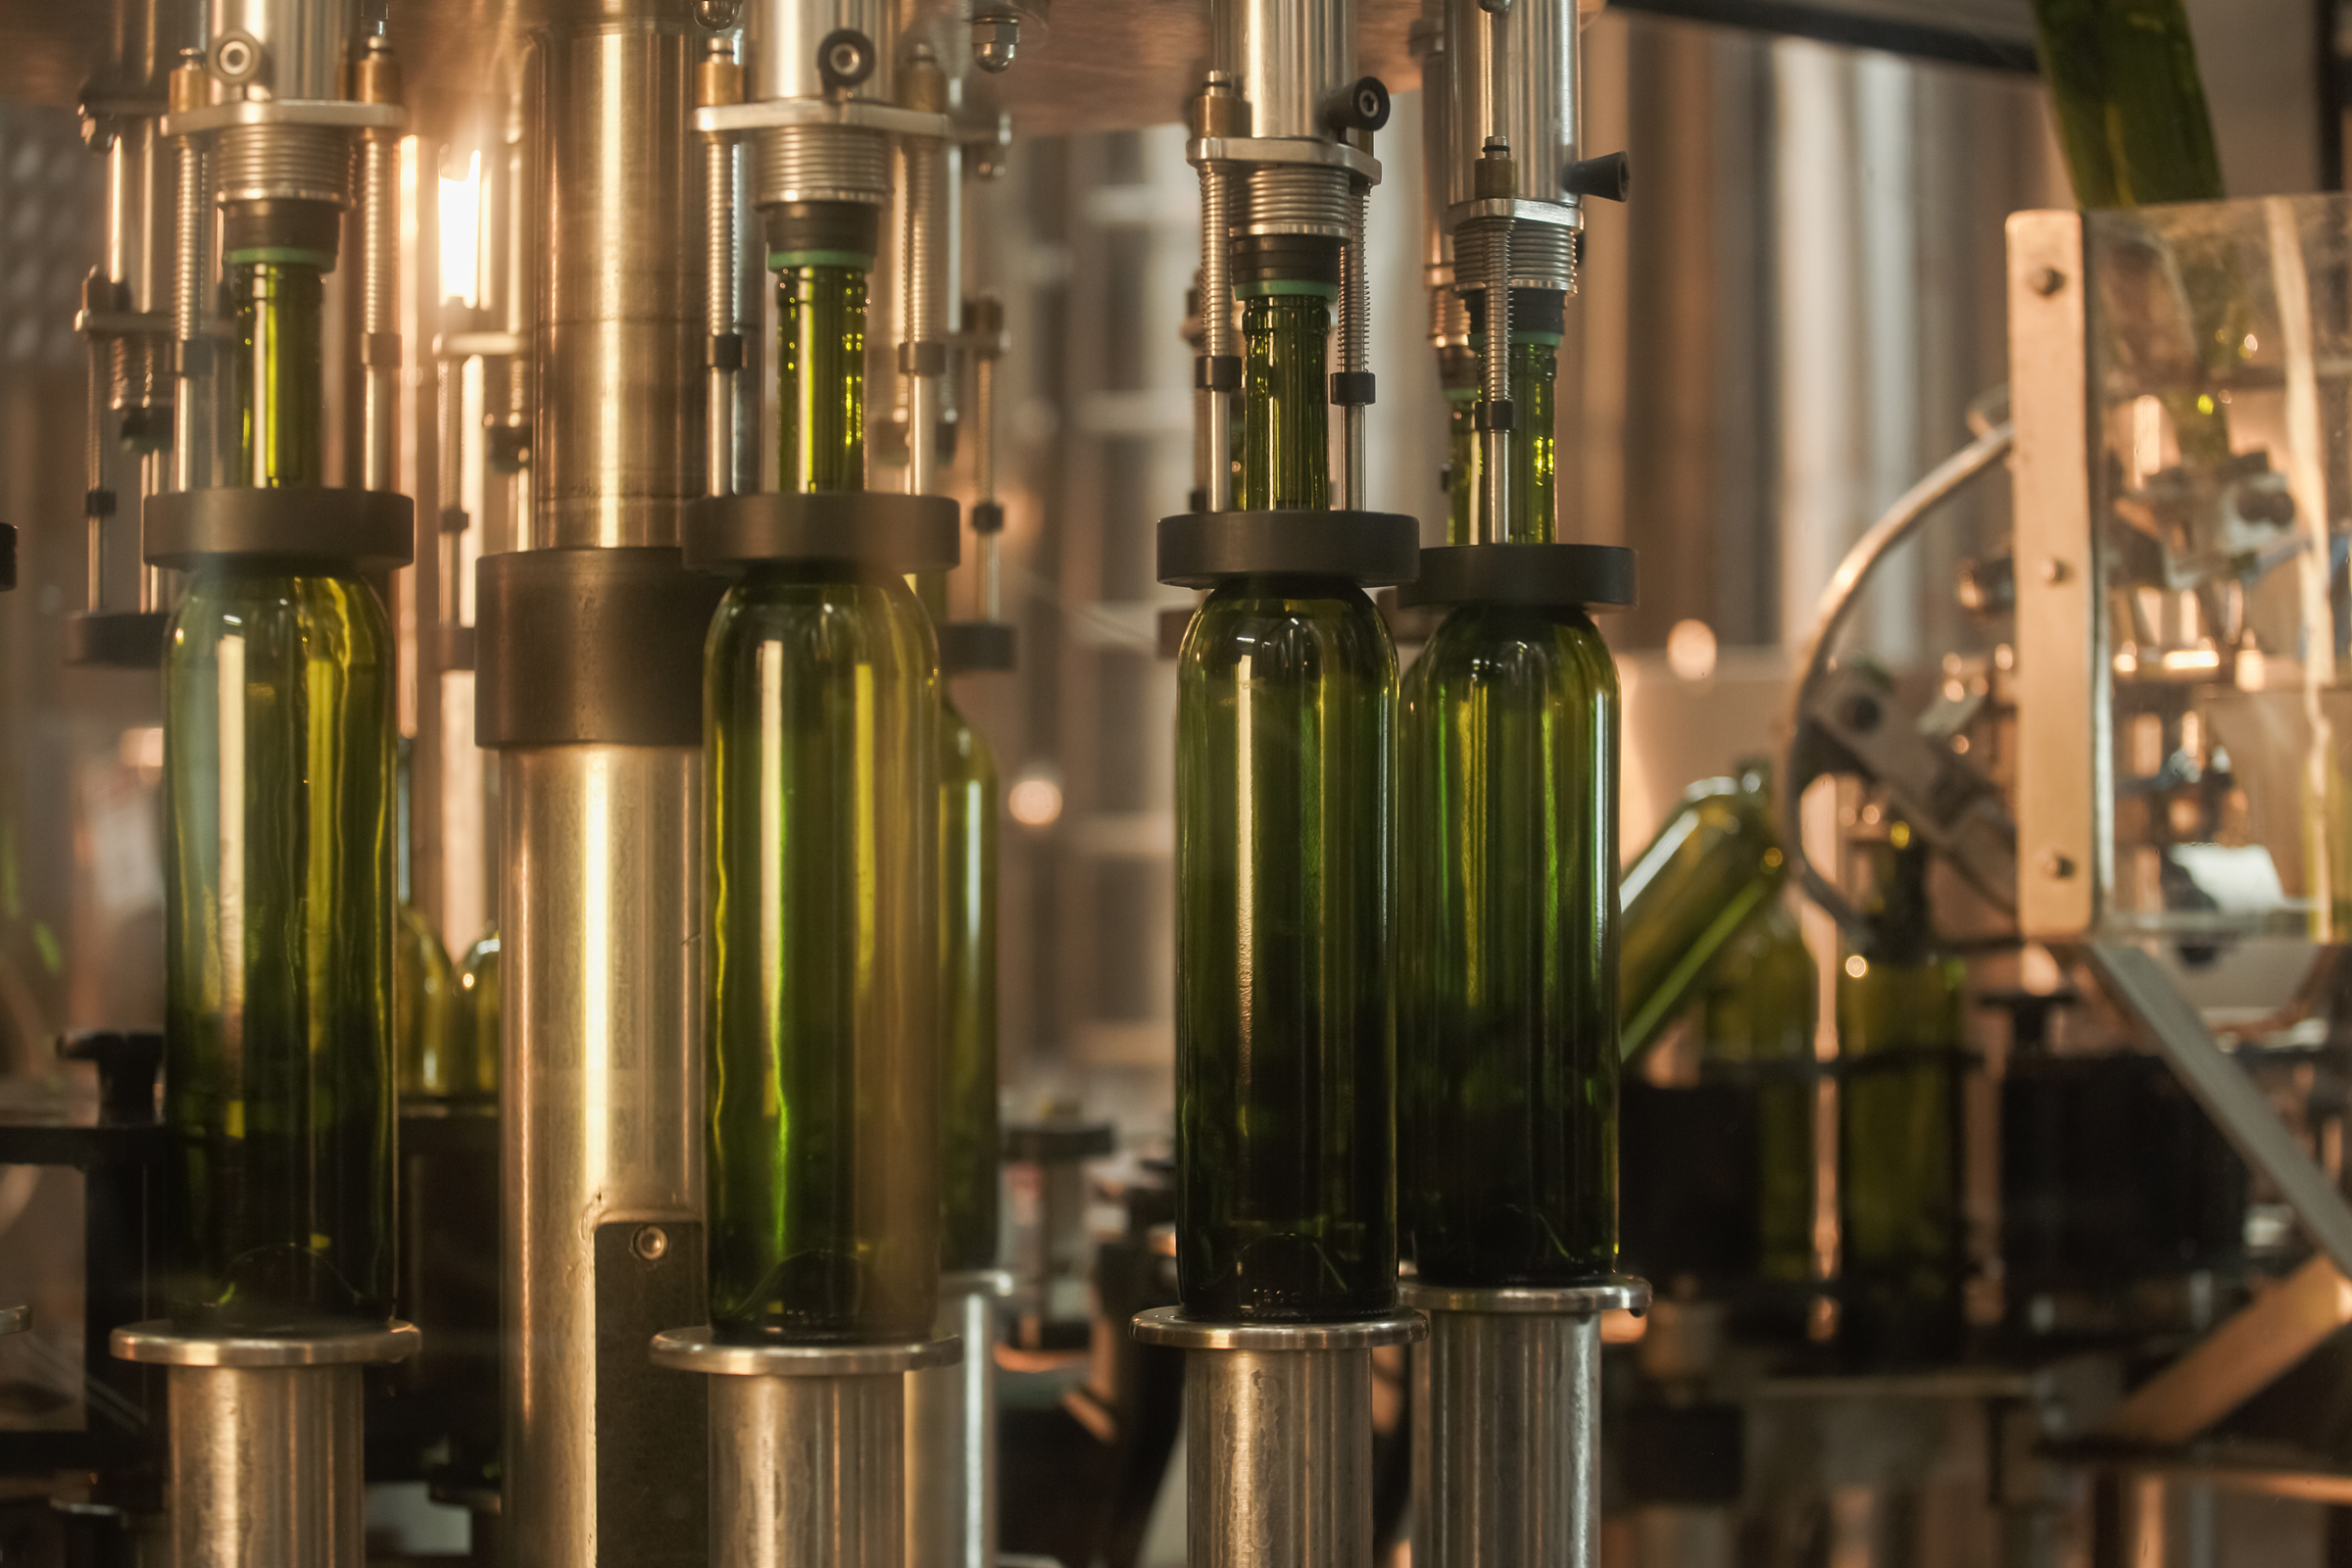 Industrielle Weinabfüllmaschine aus rostfreiem Stahl, mit grünen Weinflaschen